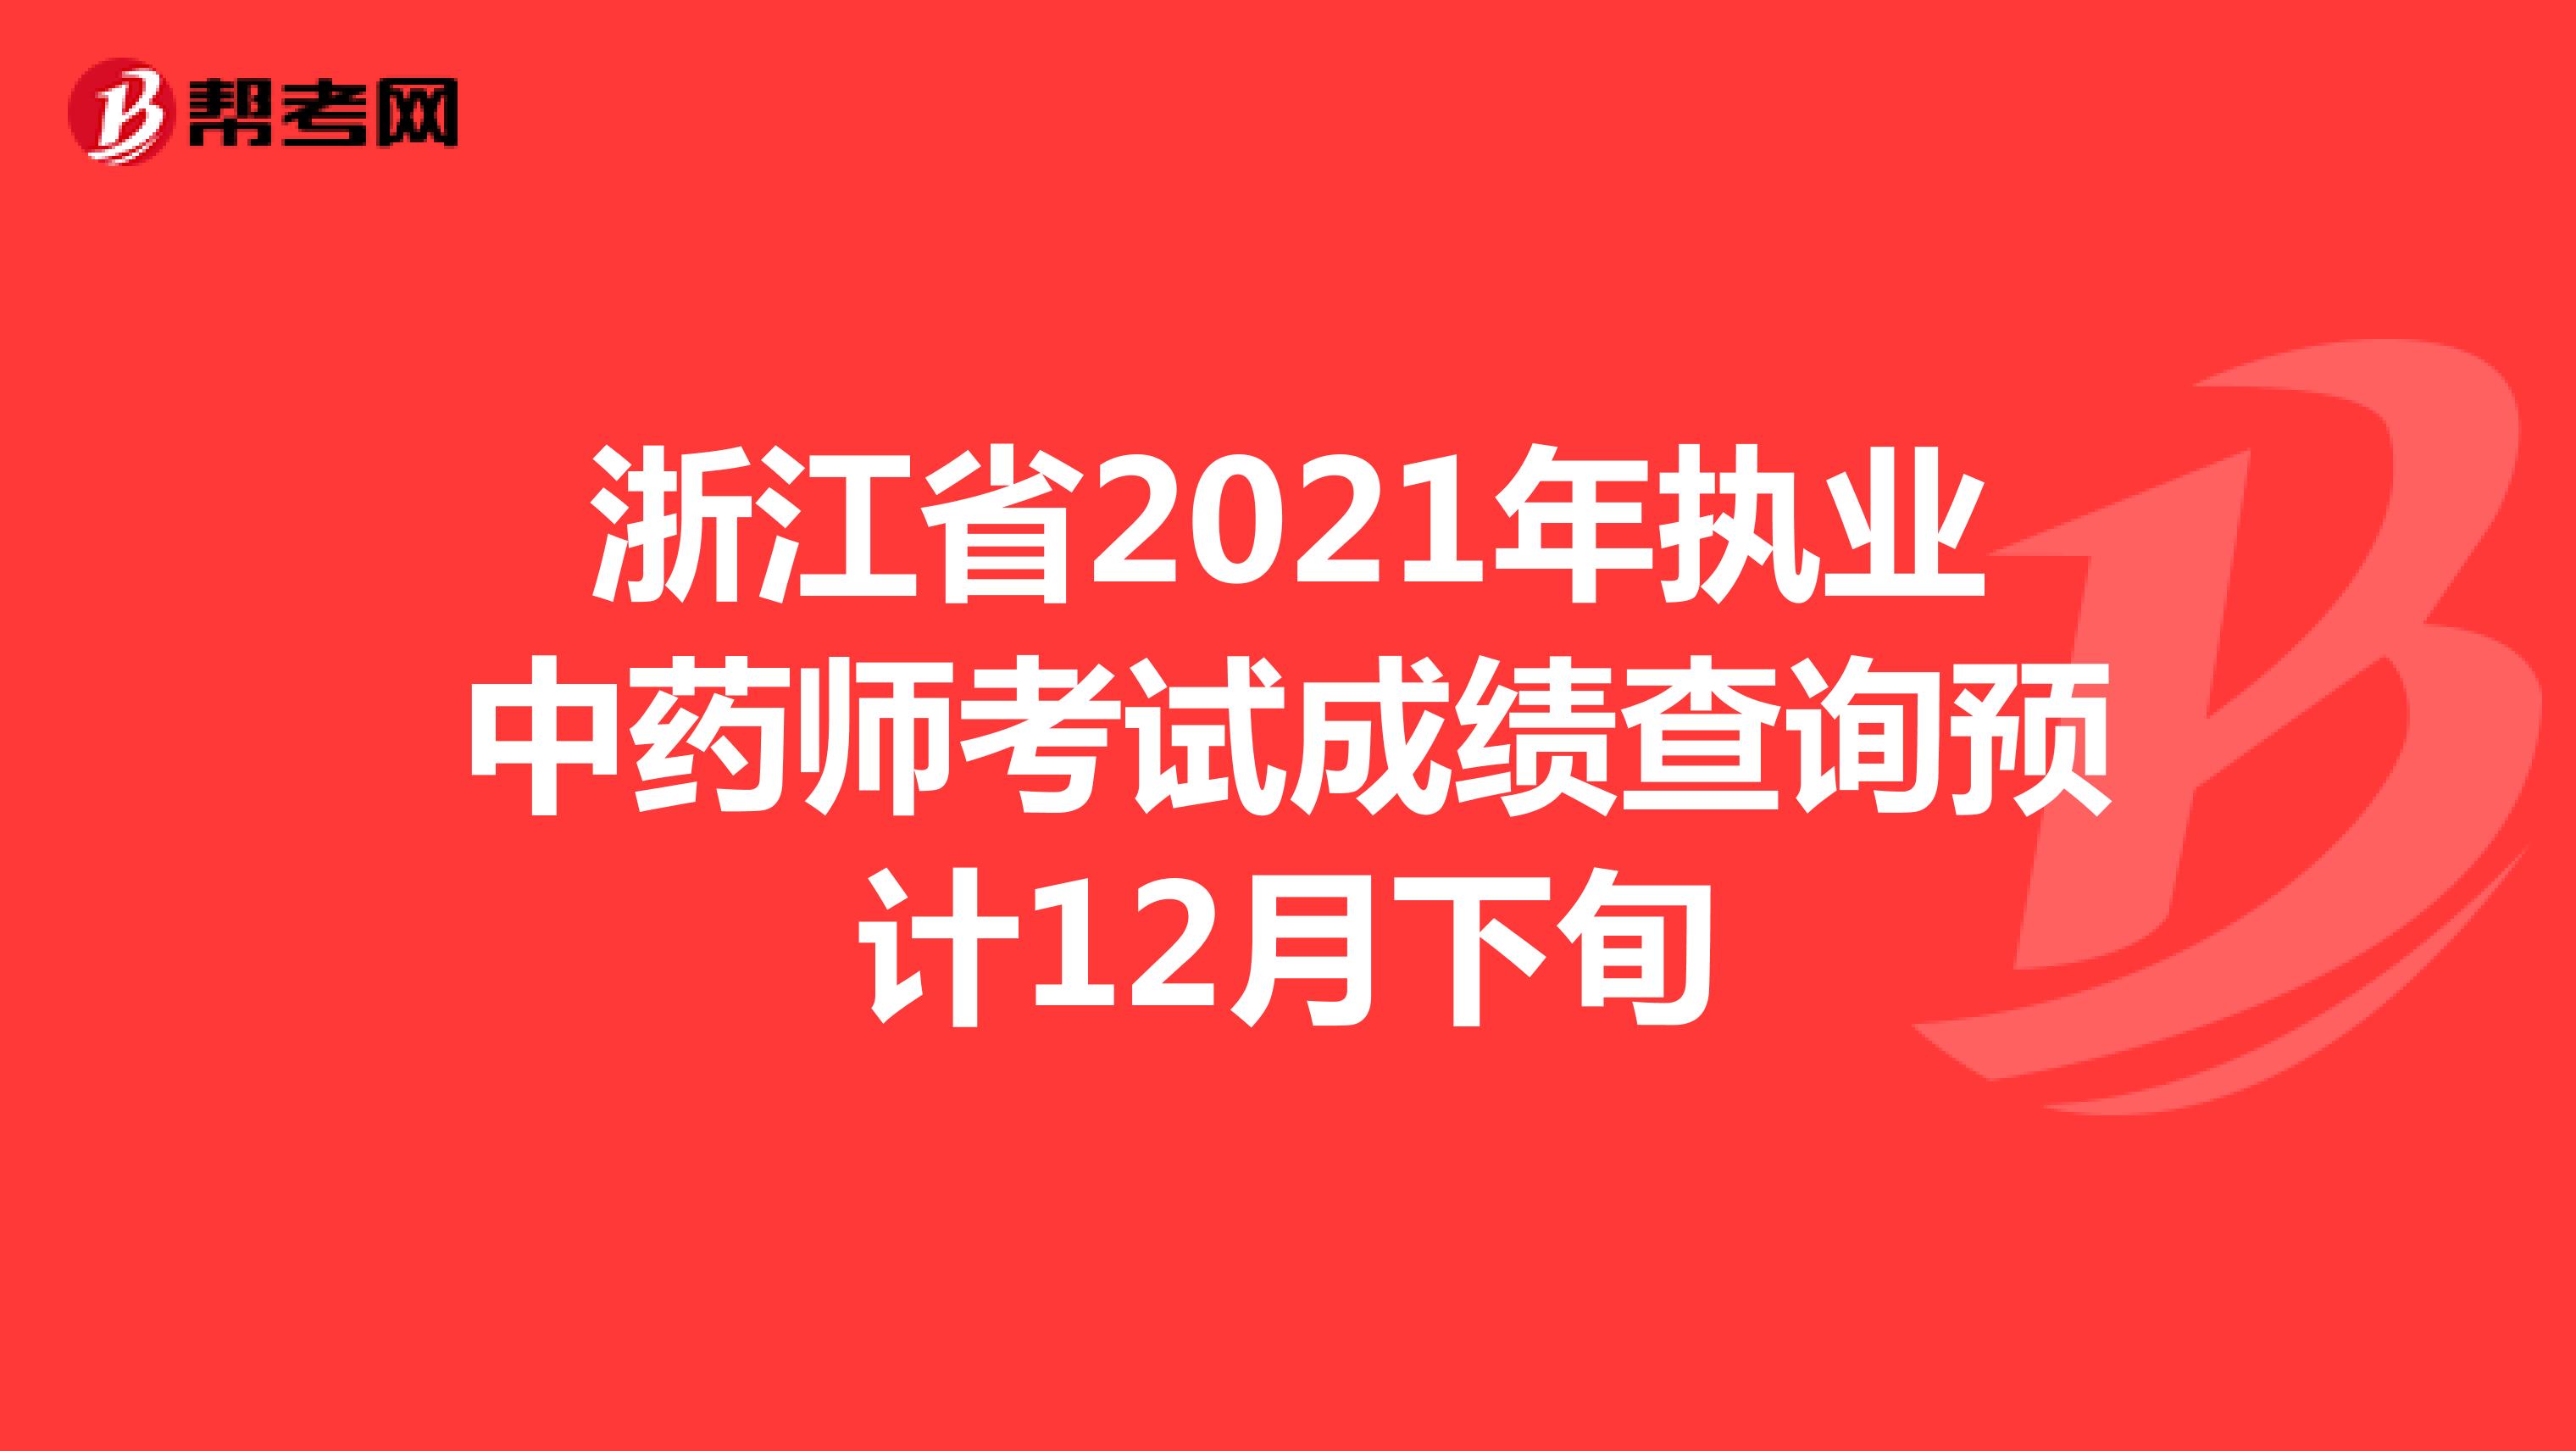 浙江省2021年执业中药师考试成绩查询预计12月下旬